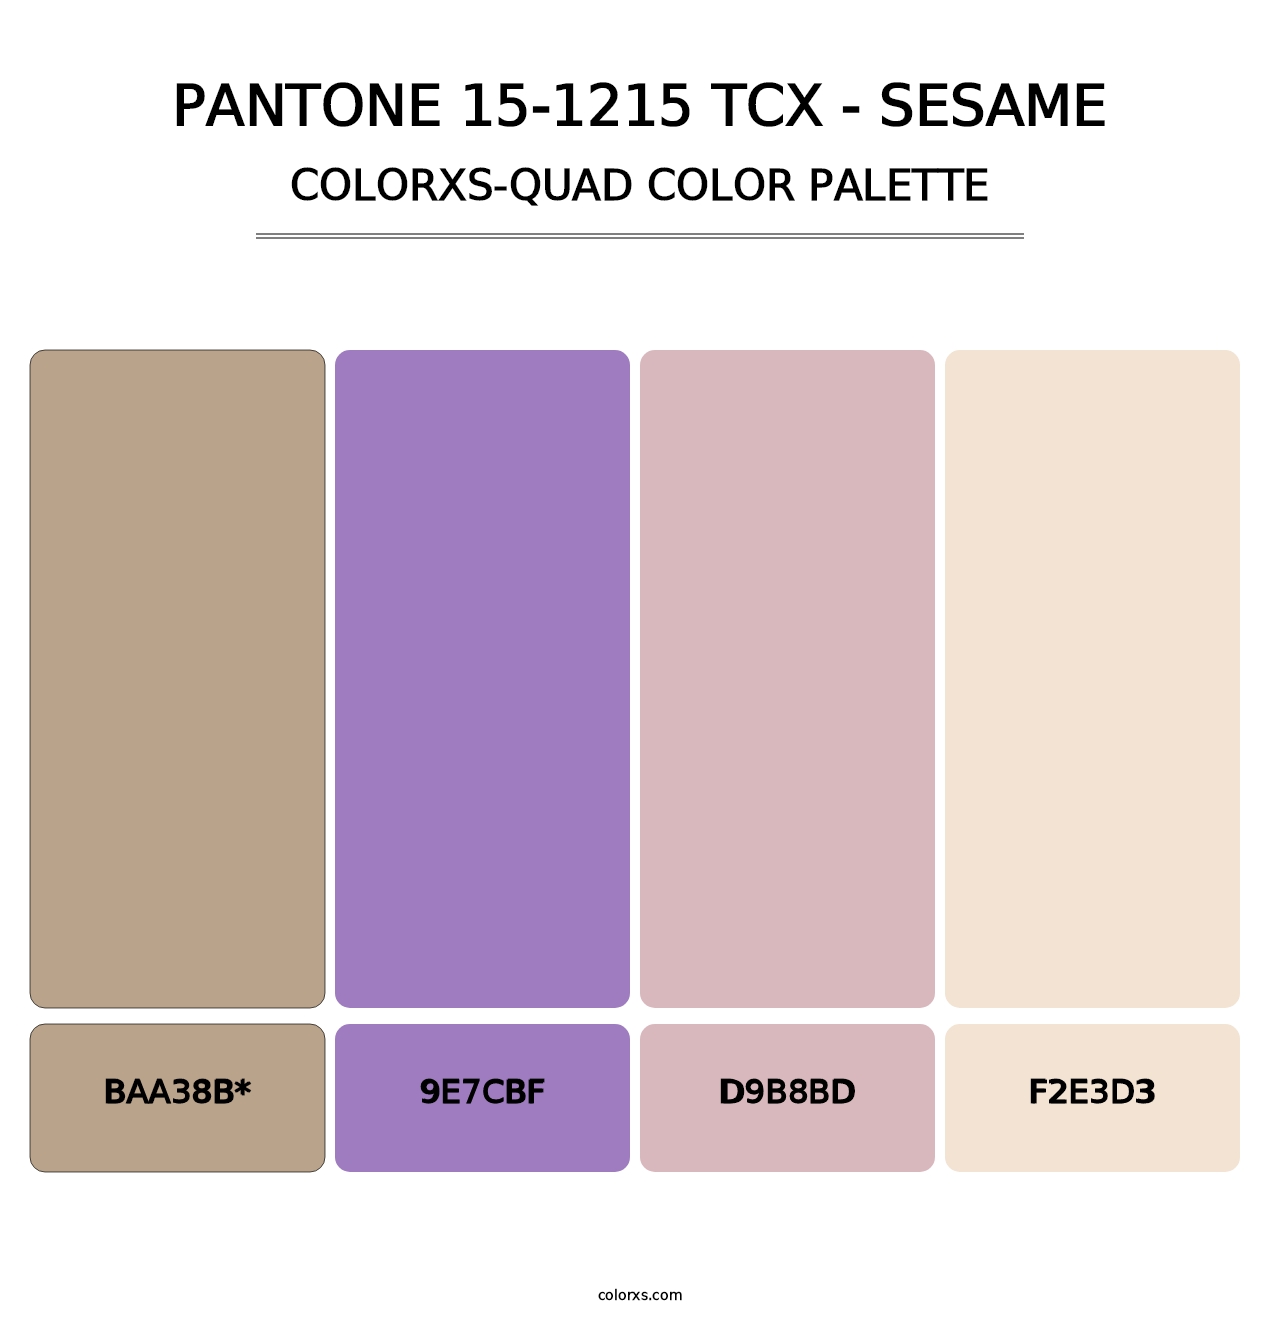 PANTONE 15-1215 TCX - Sesame - Colorxs Quad Palette